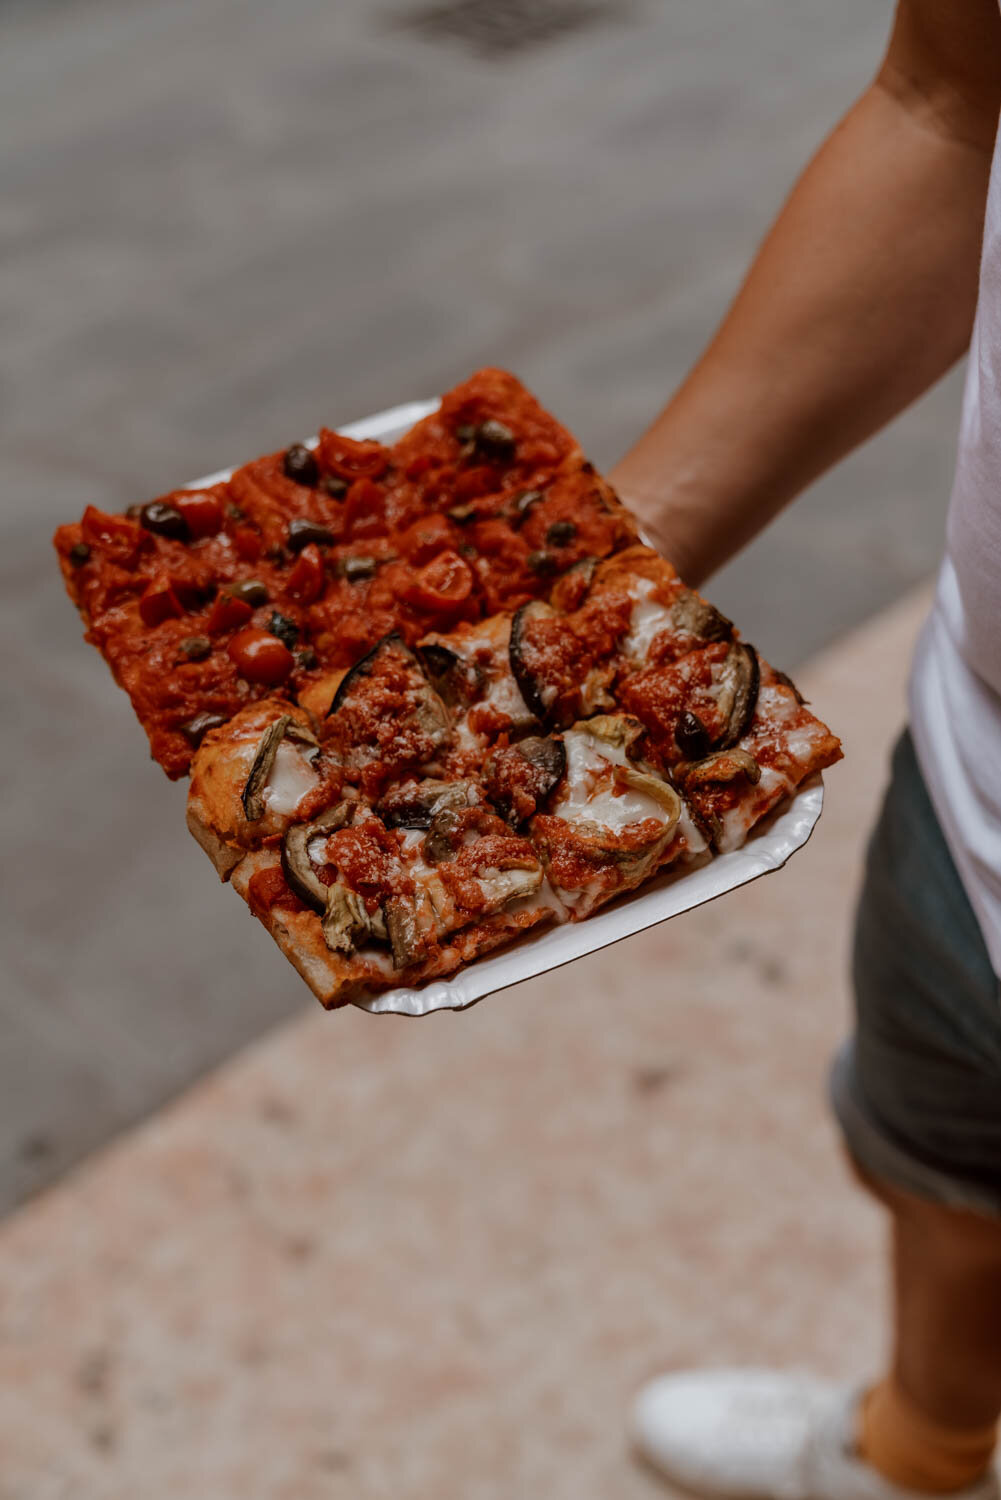 Best Pizza in Verona